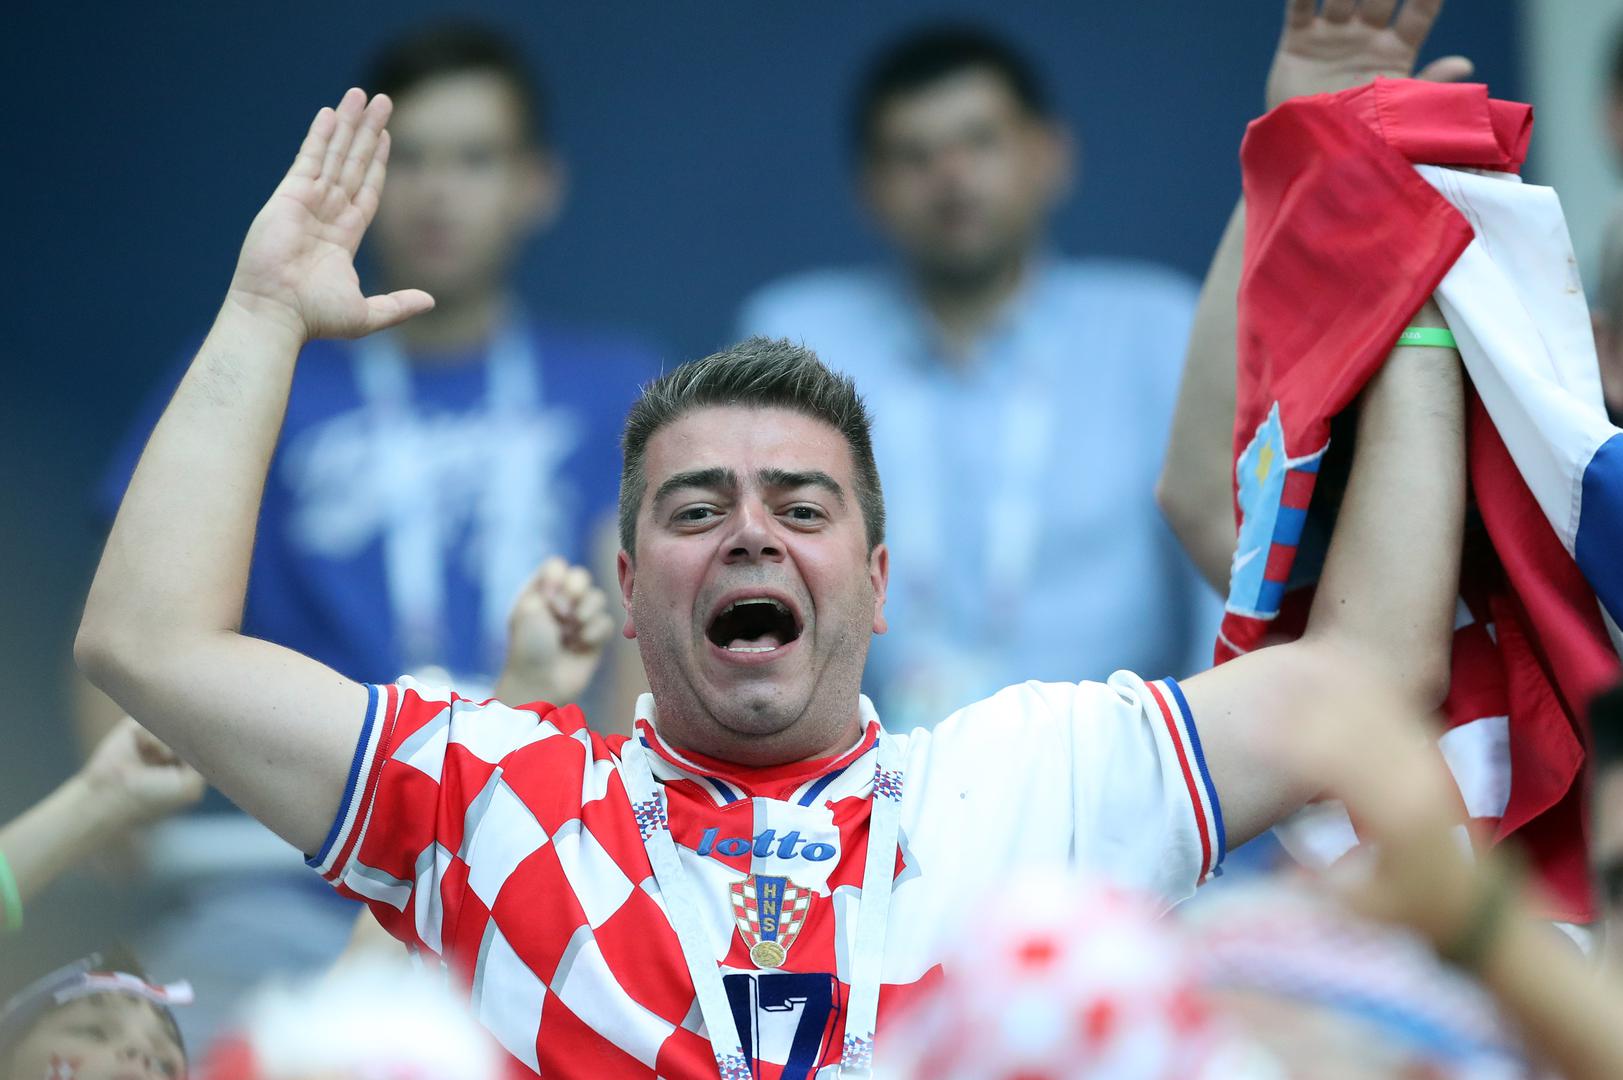 Ako prođe dalje, Hrvatska će u četvrtfinalu igrati protiv domaćina Rusije